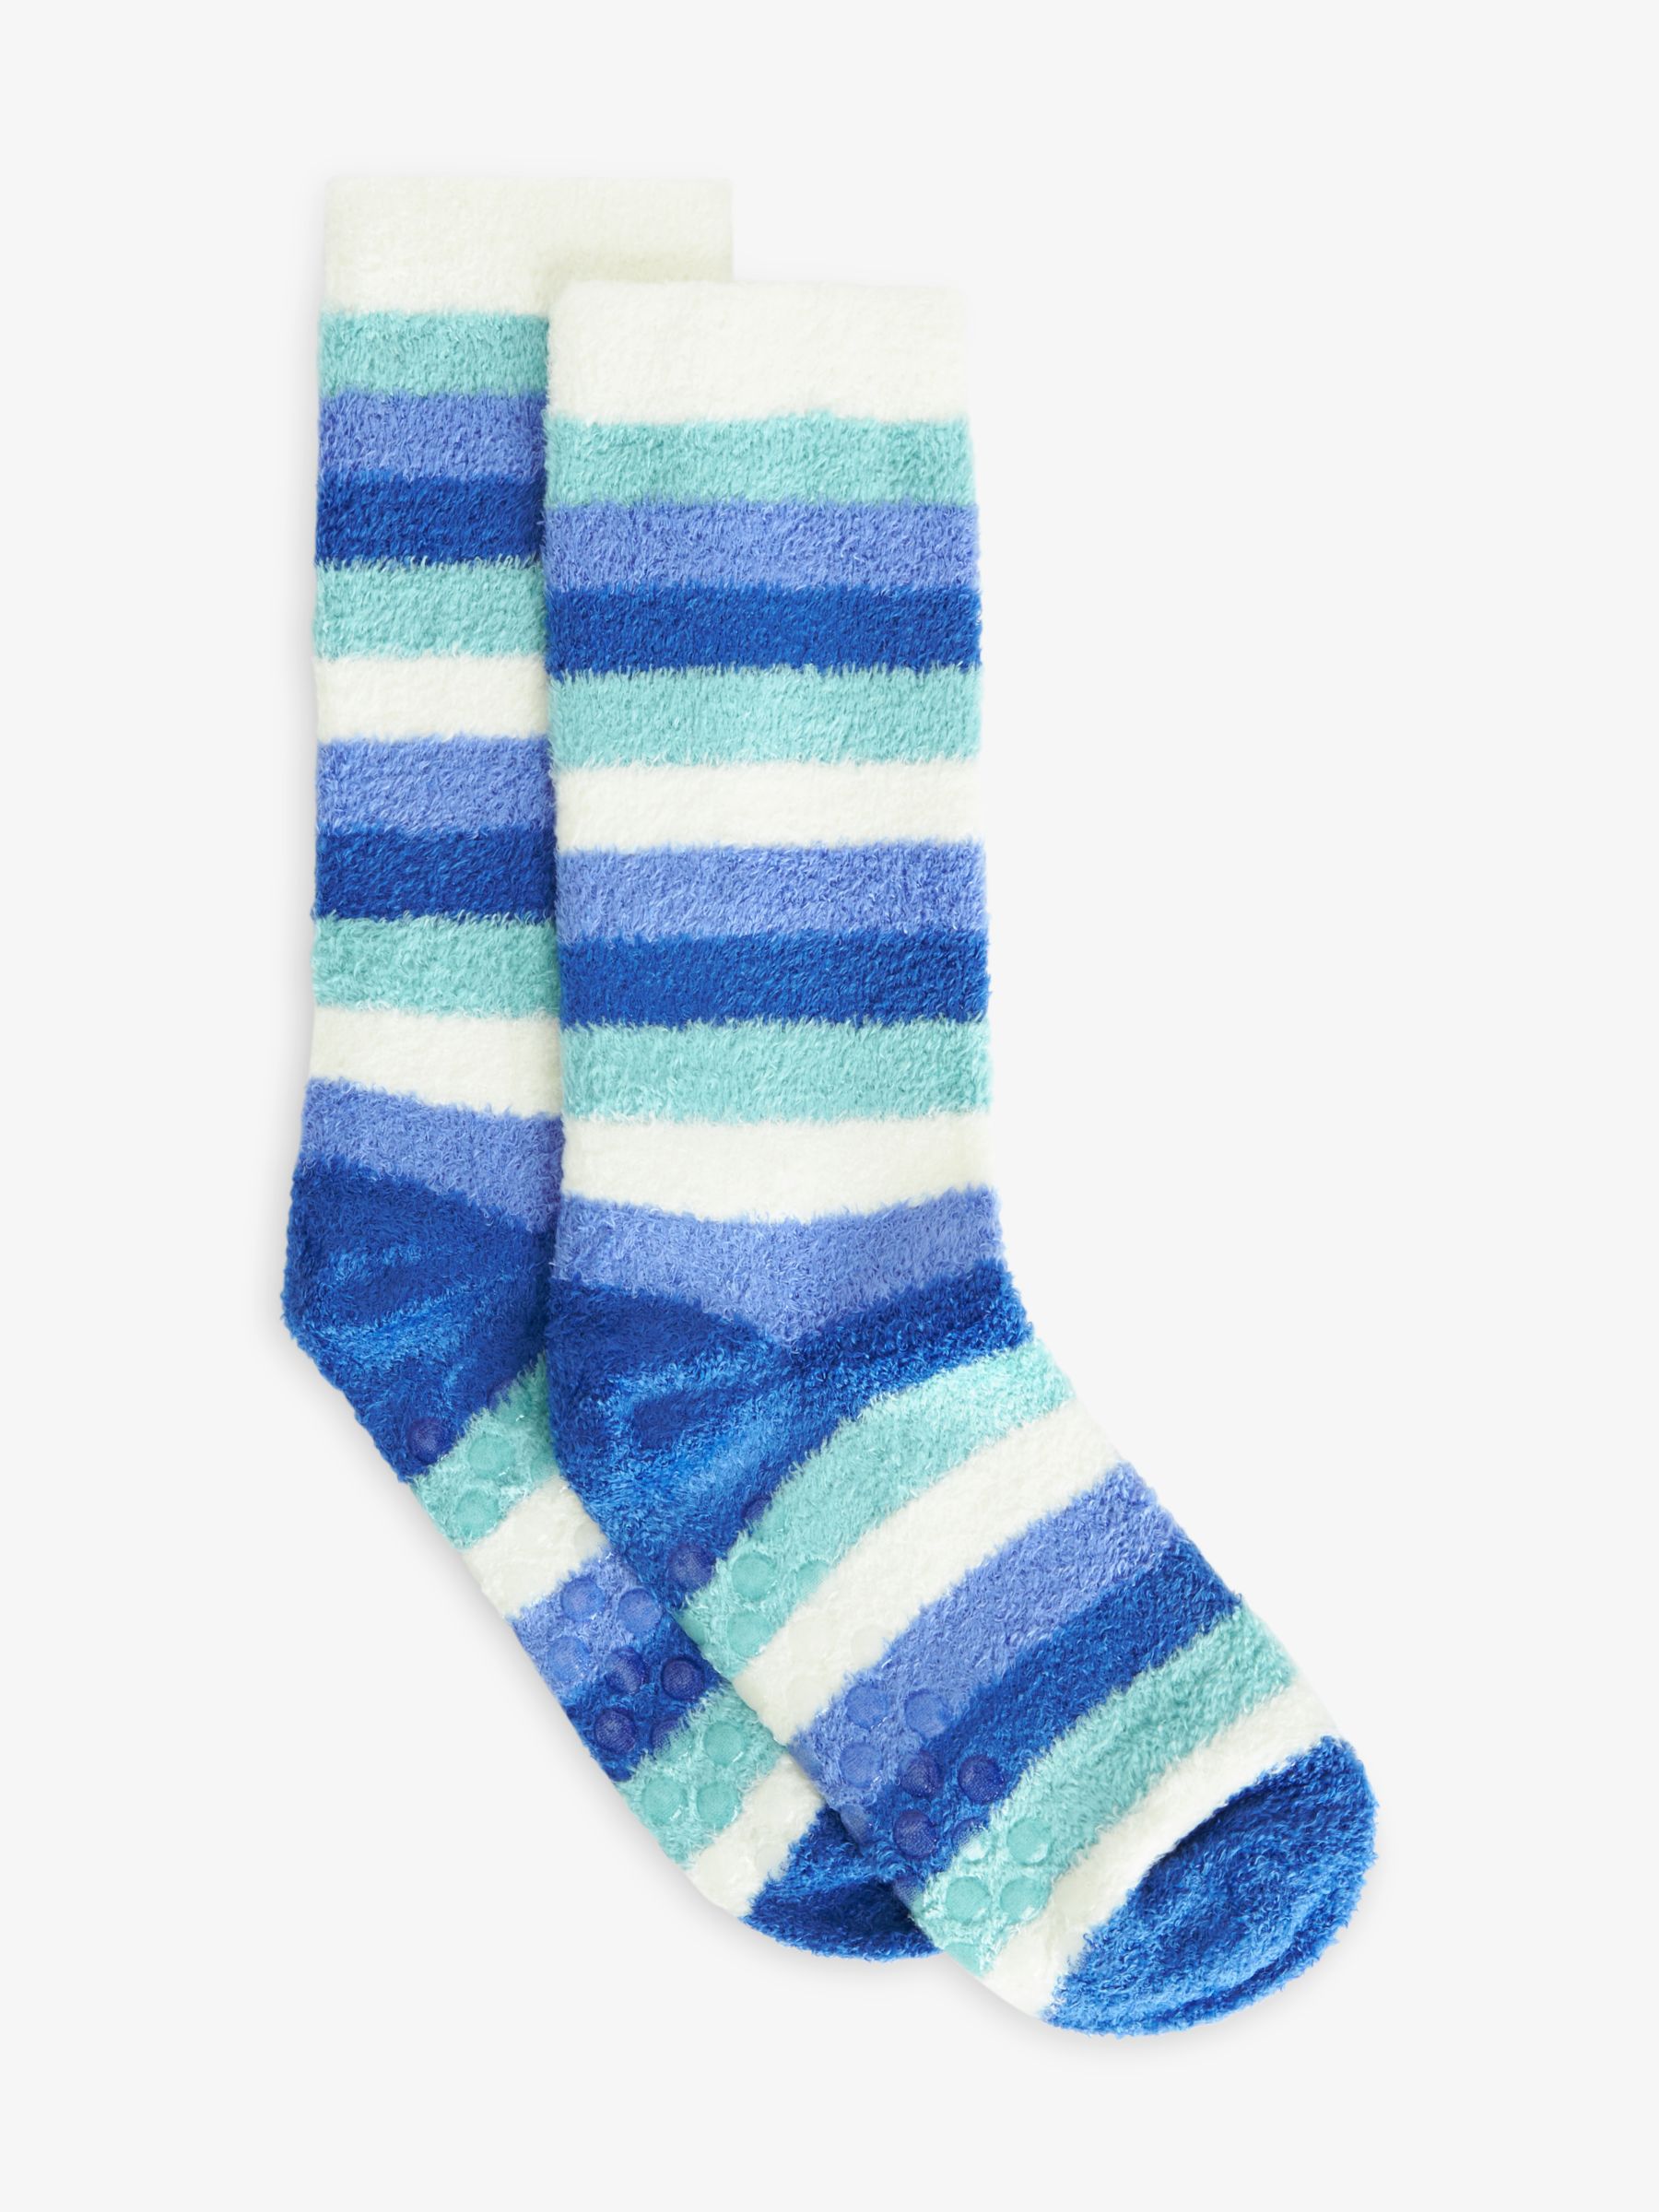 Fuzzy Socks - John's Crazy Socks